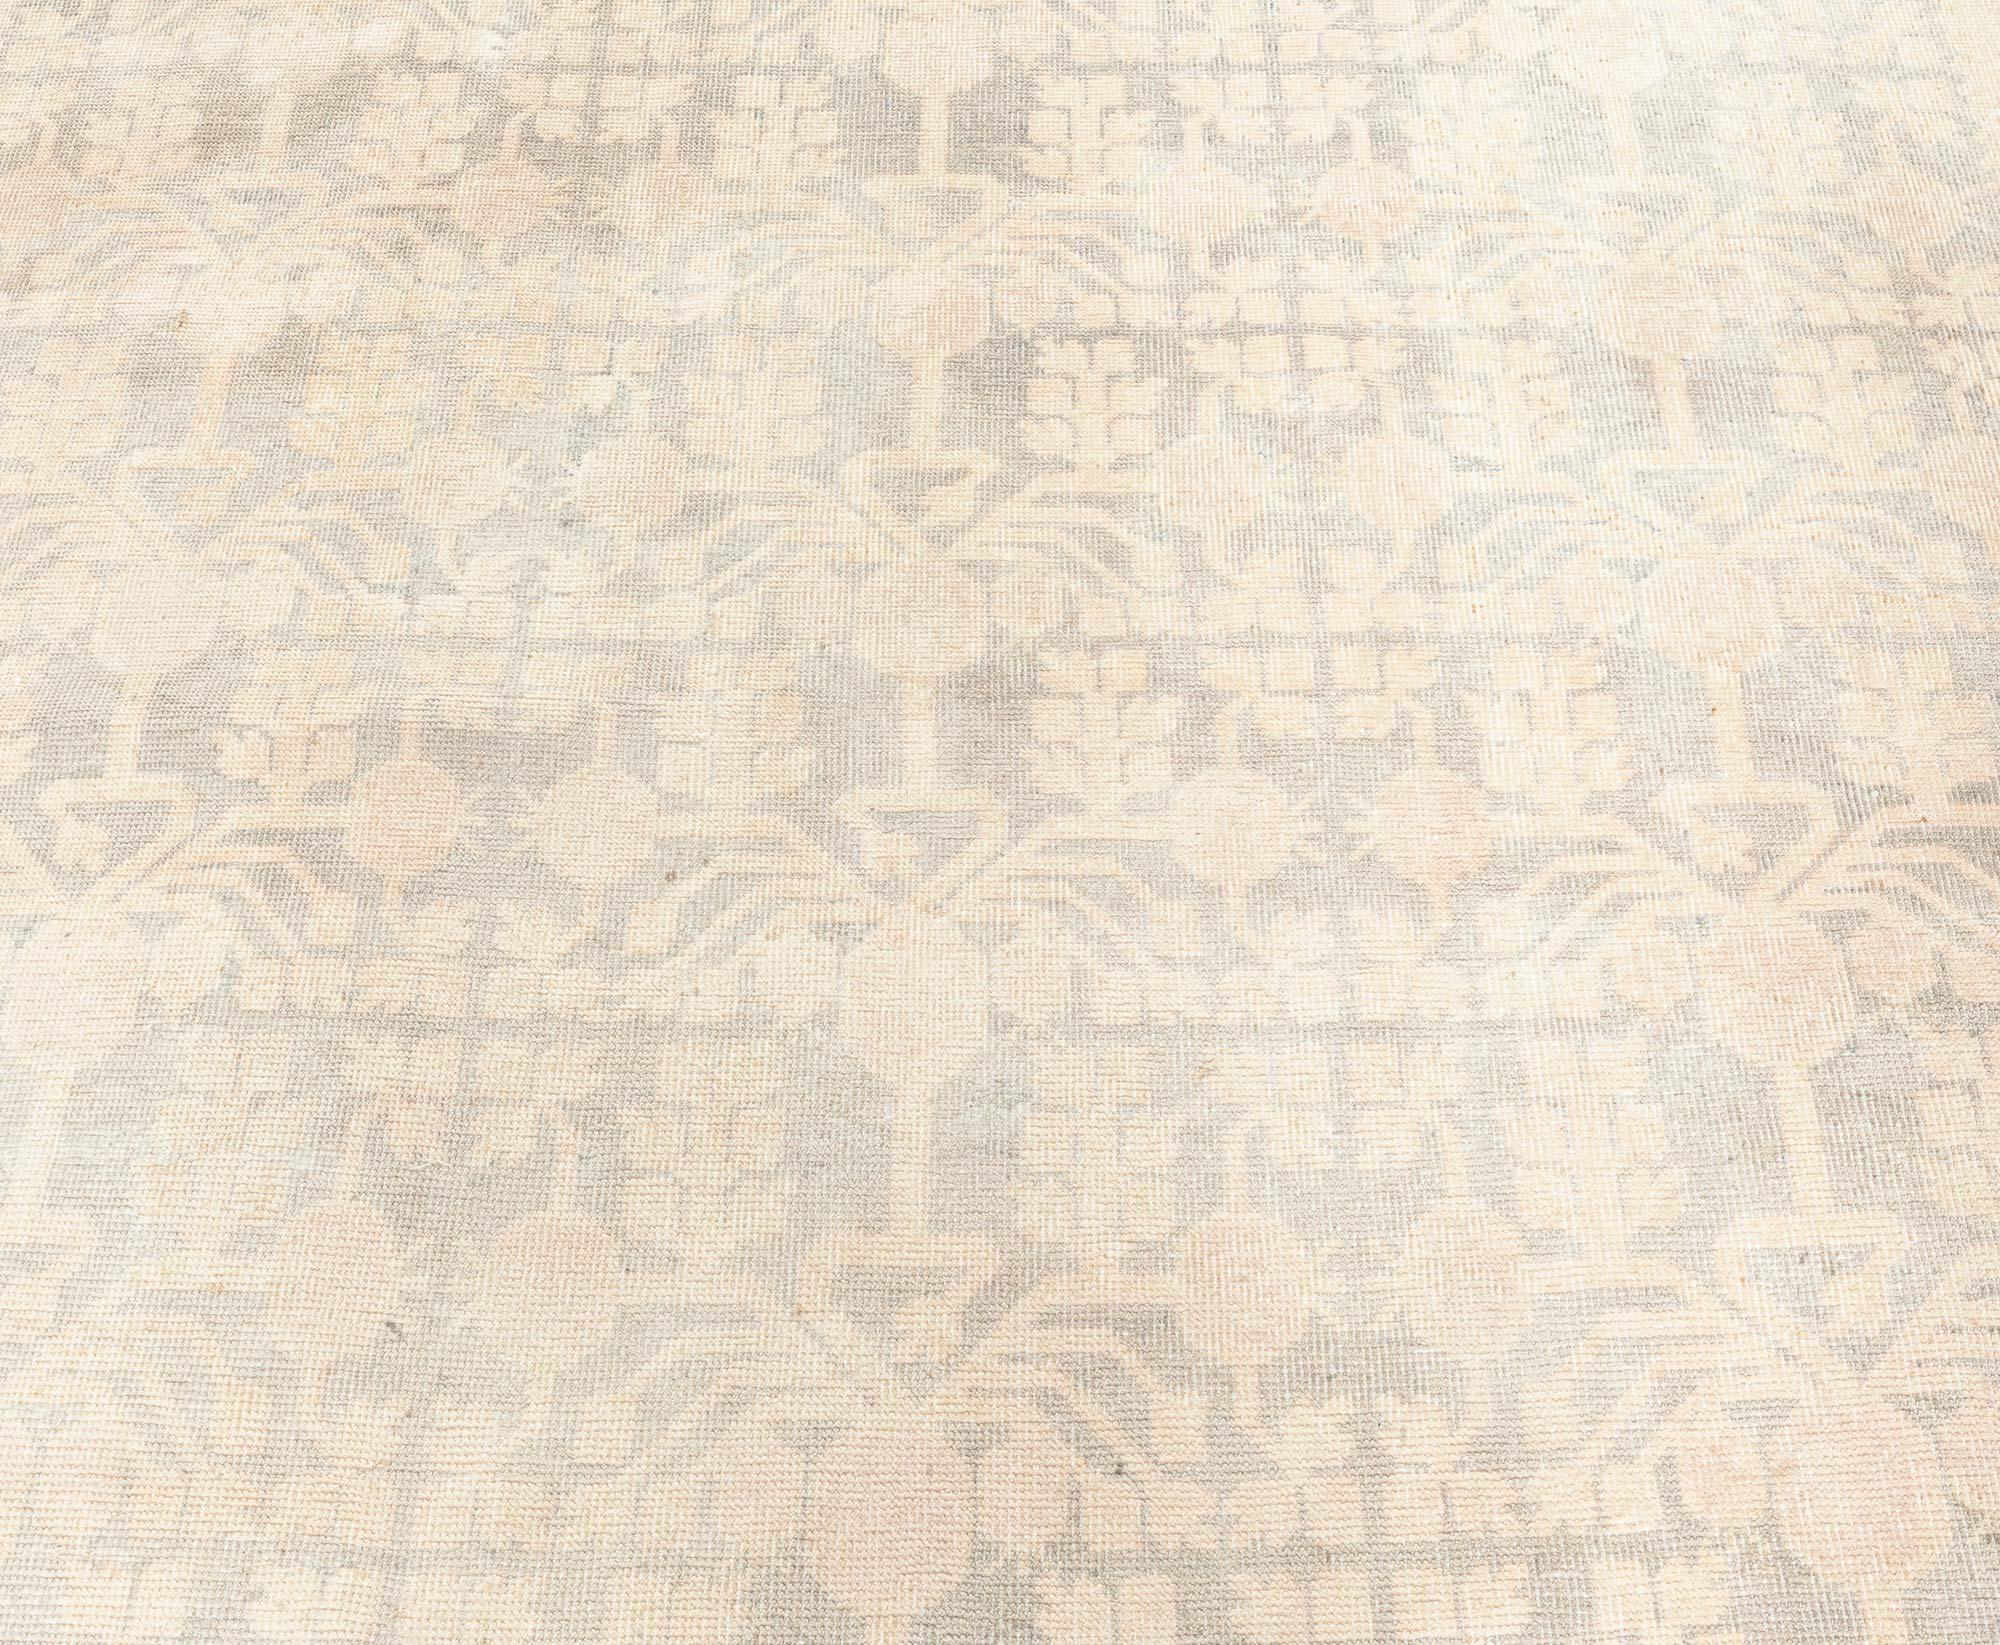 Samarkand-Teppich, Vintage
Größe: 7'0